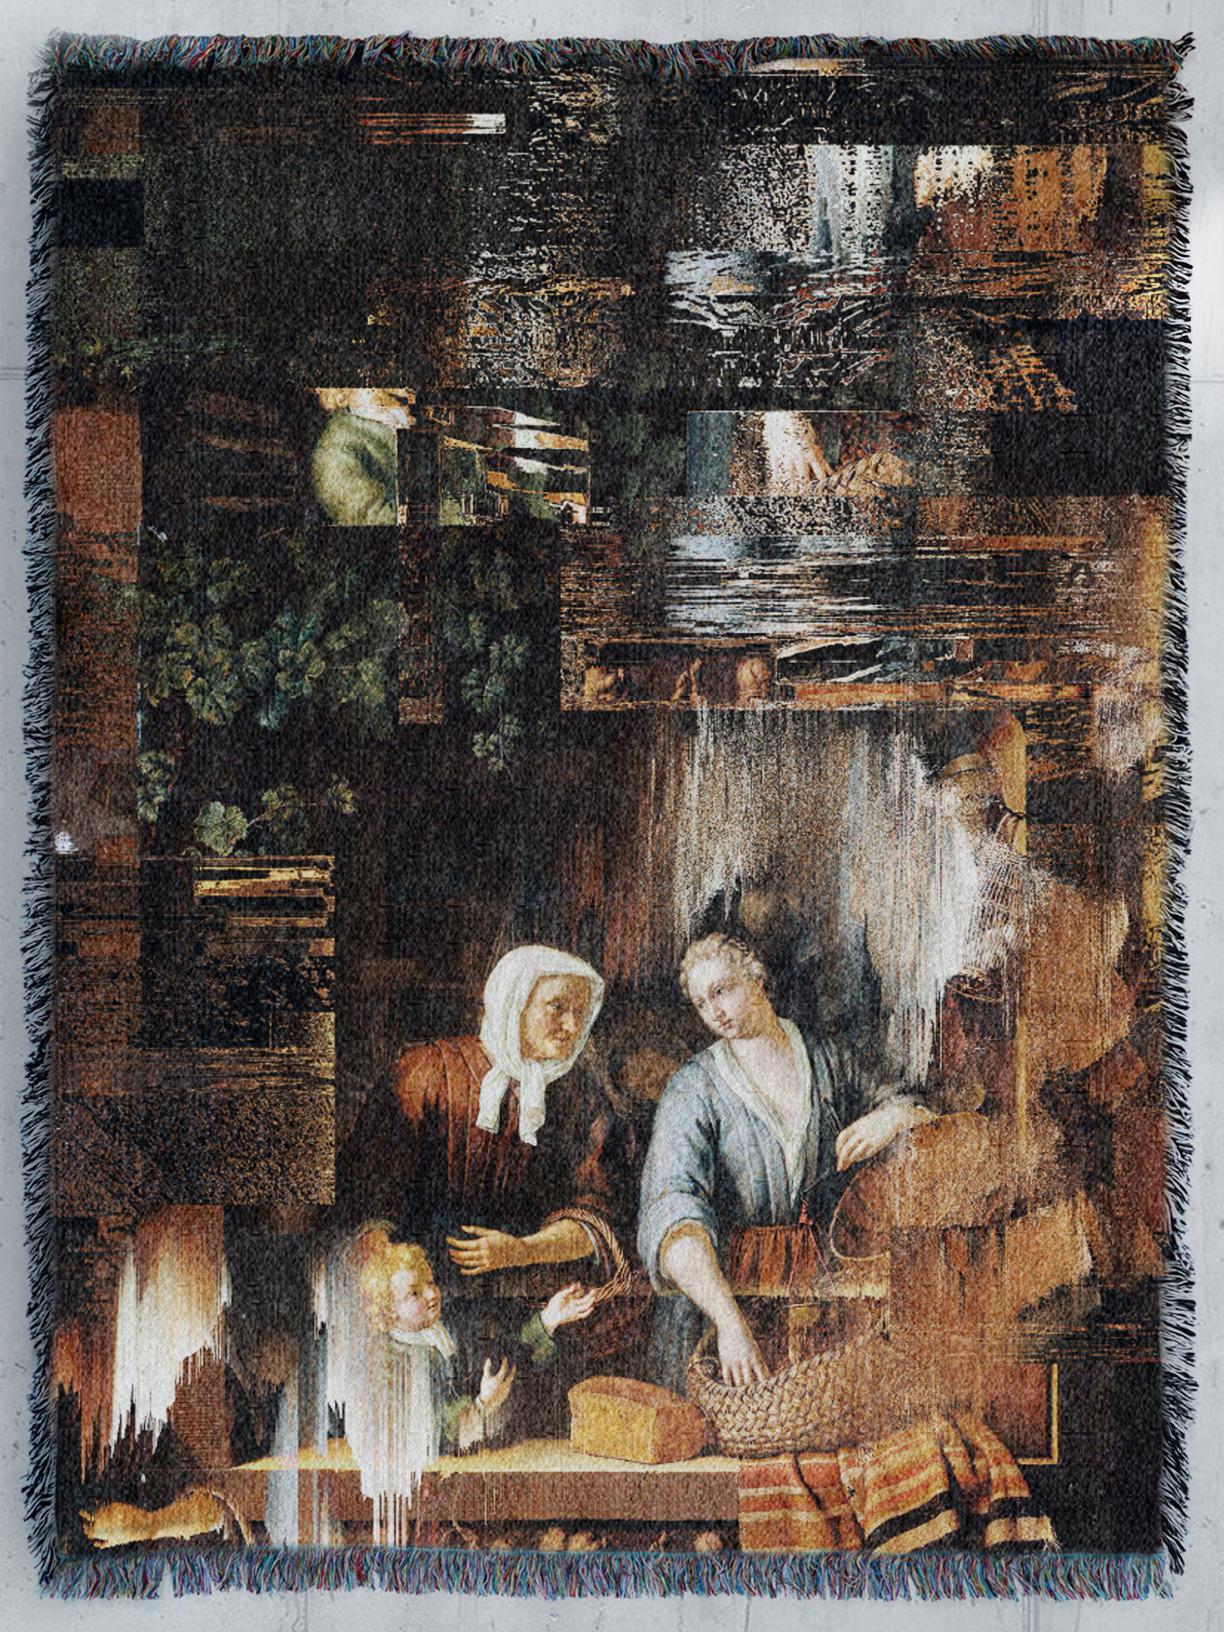 Memories of The Grocer's Shop de Frans van Mieris par Marco Salvi